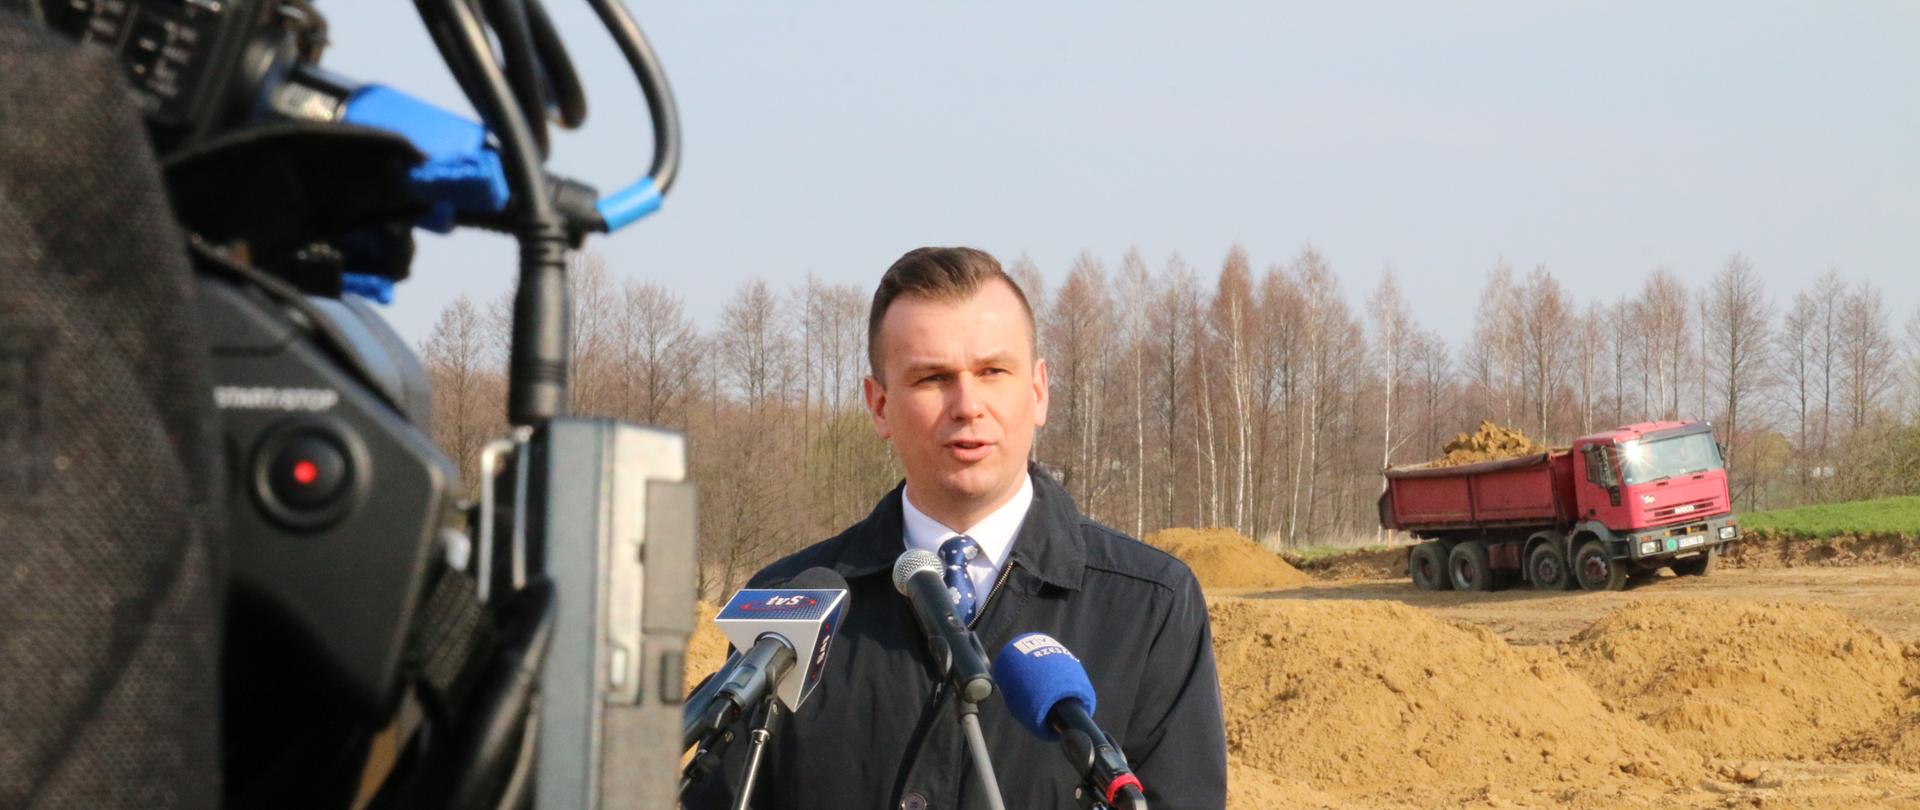 Na tle budowy drogi wiceminister Adam Hamryszczak przemawia do mikofonu